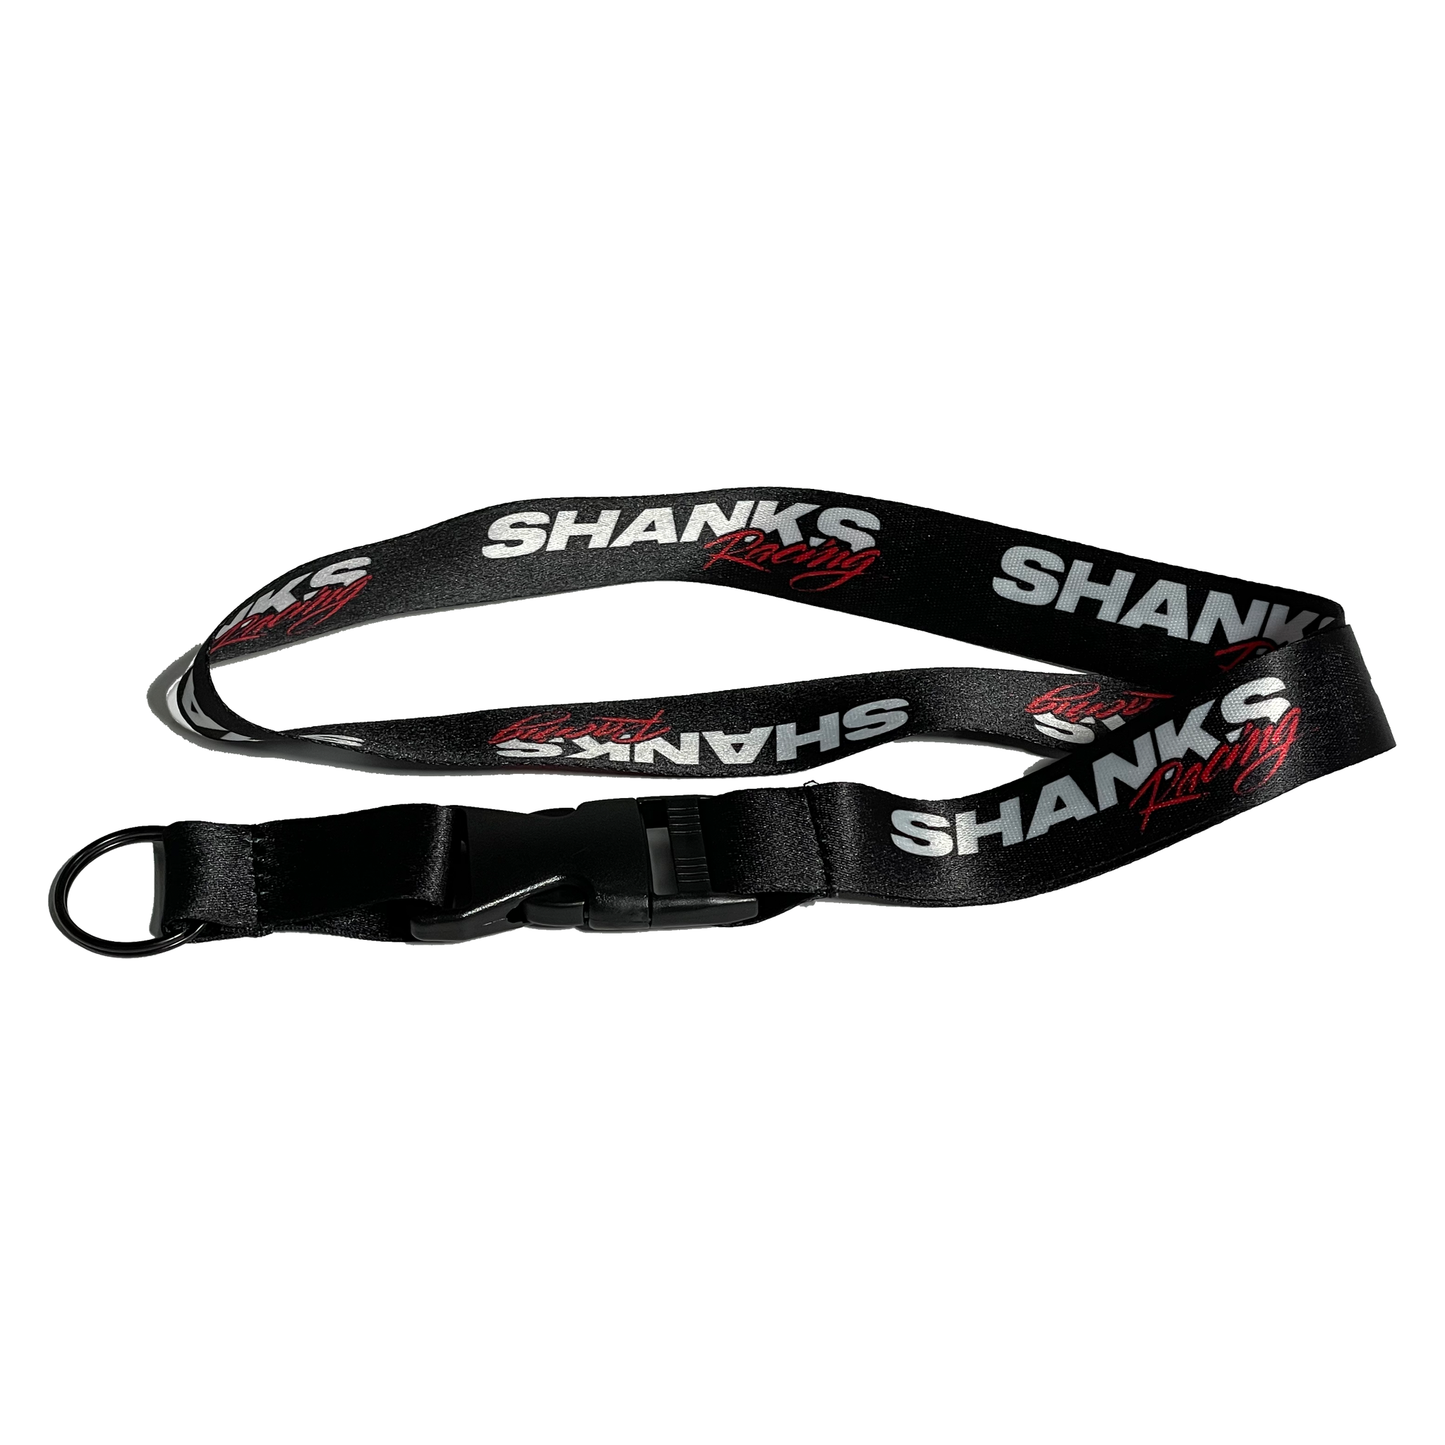 Shanks Racing Lanyard - Black